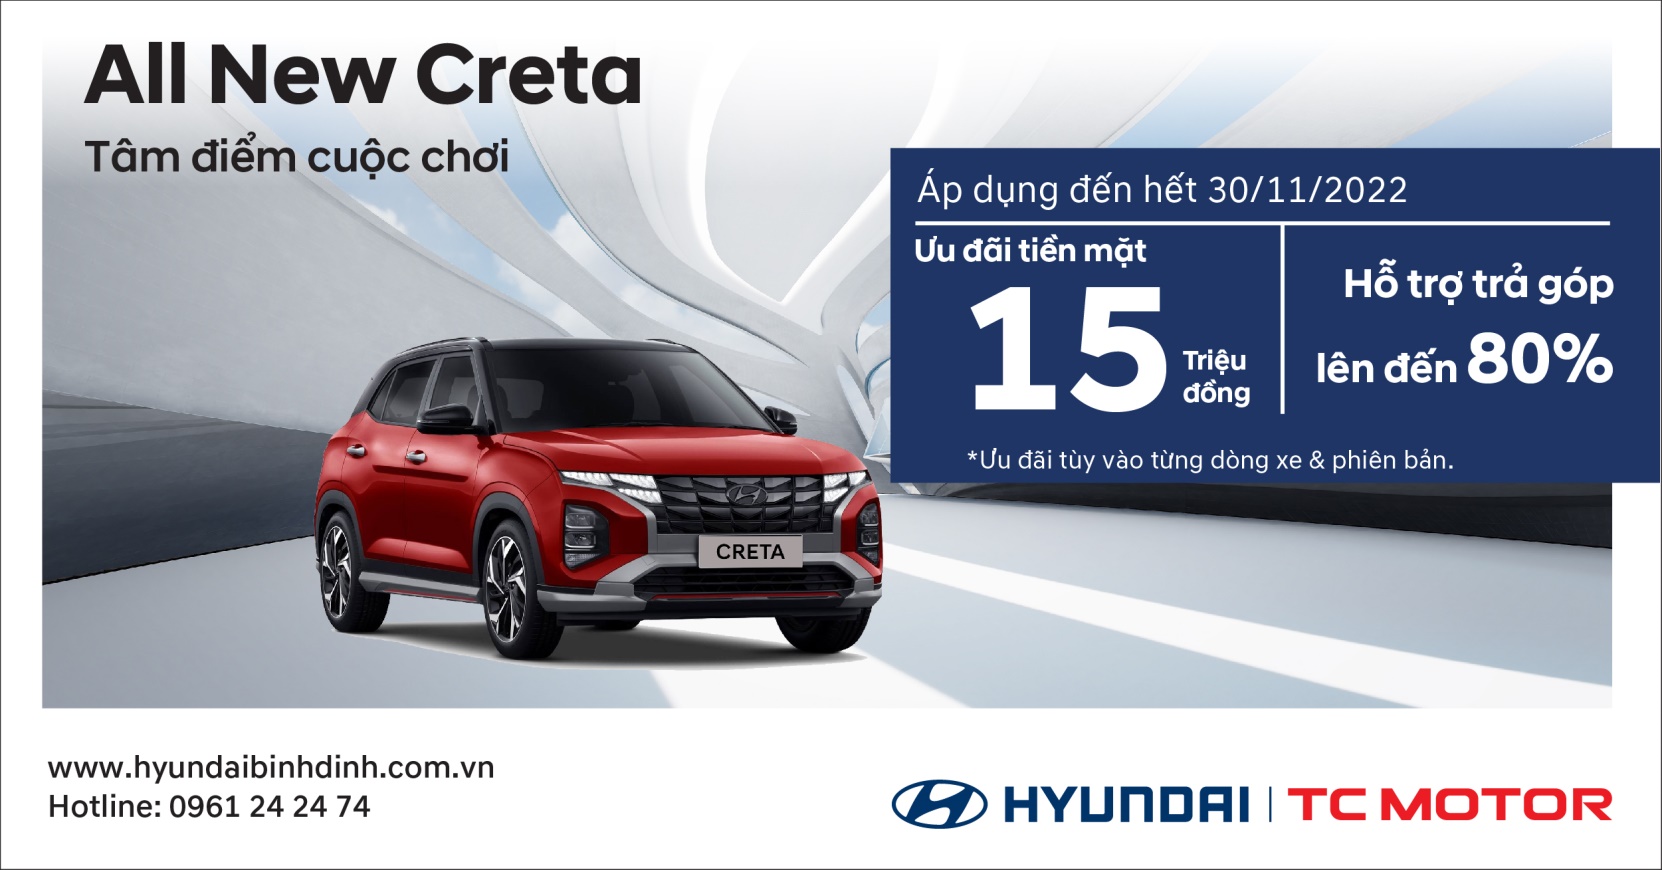 Hyundai Bình Định: Ưu đãi khủng cho Hyundai Creta tháng 11/2022 - 1